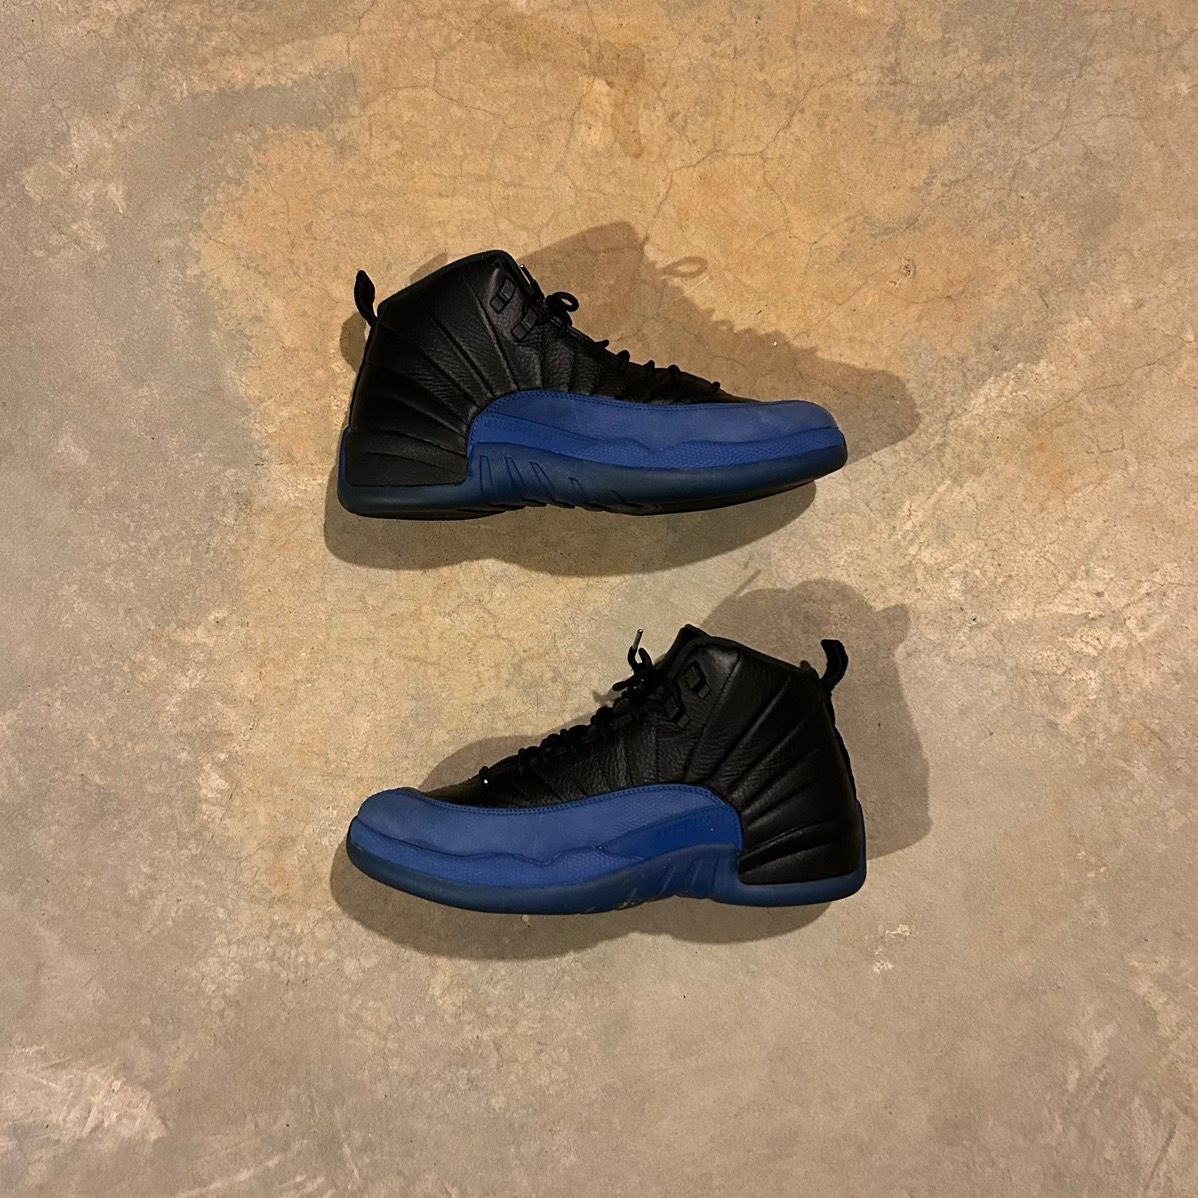 Pre-owned Jordan Nike Air Jordan 12 Retro Black Game Royal 2019 Us 13 Shoes In Blue